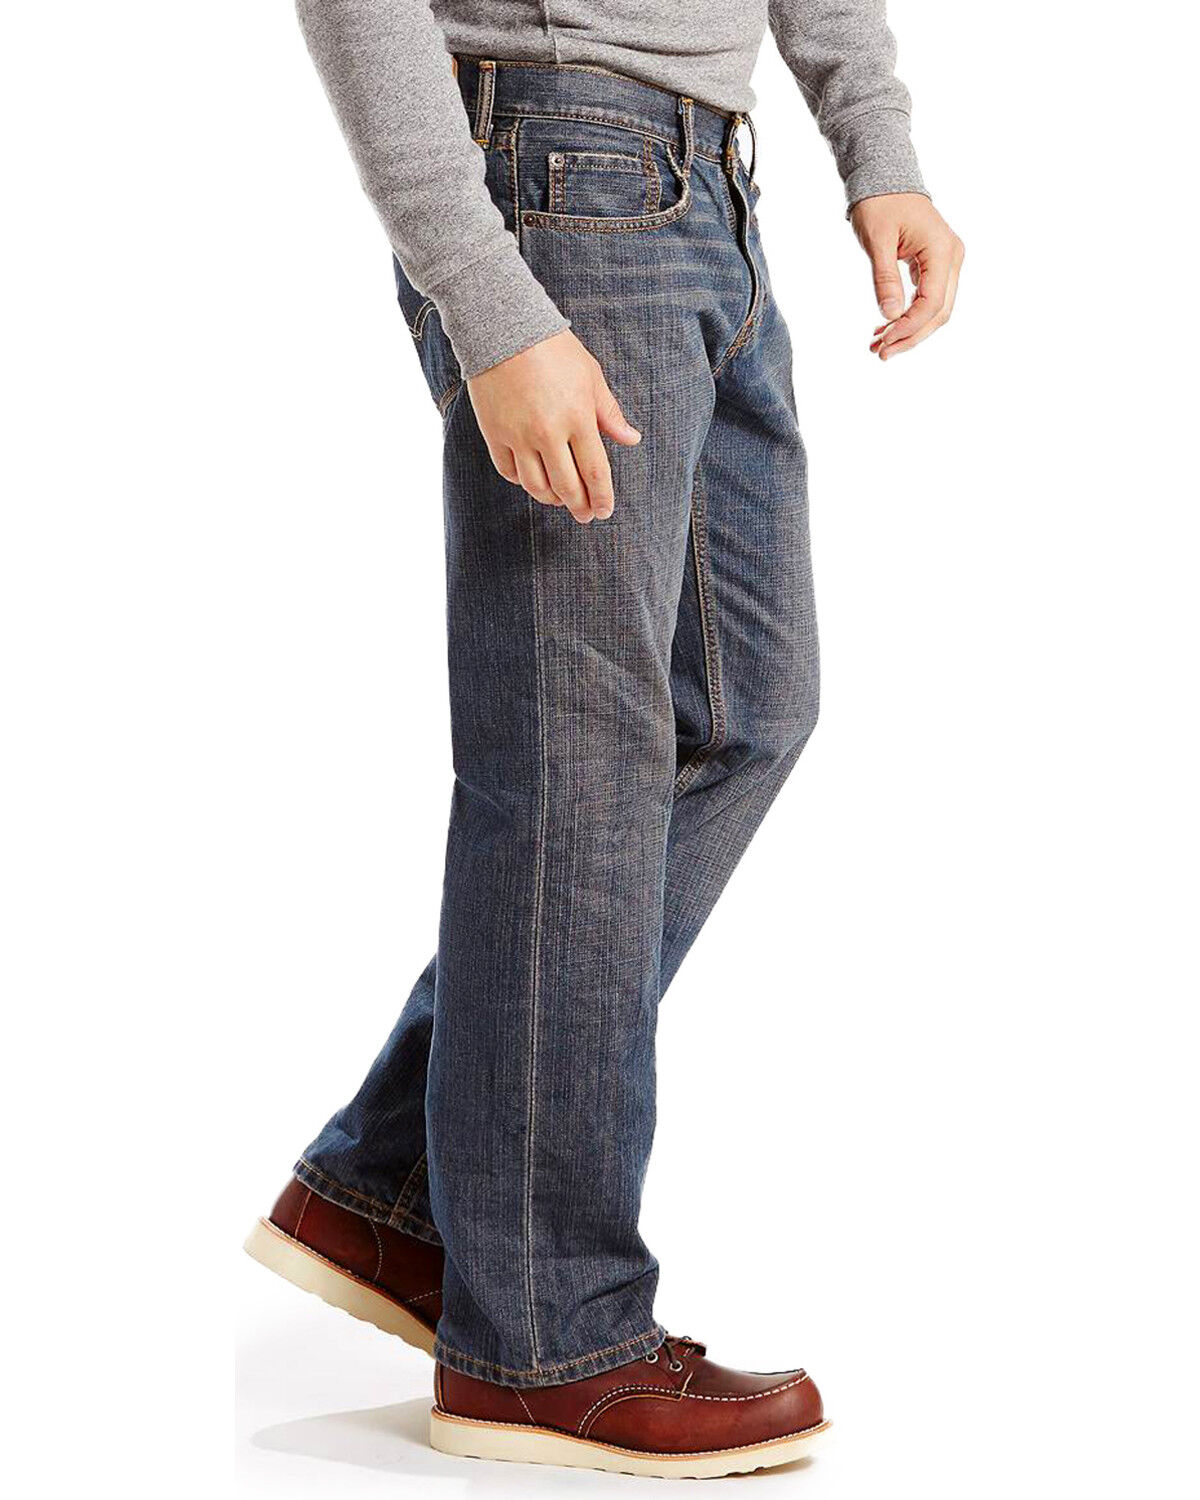 levi's 559 jeans colors